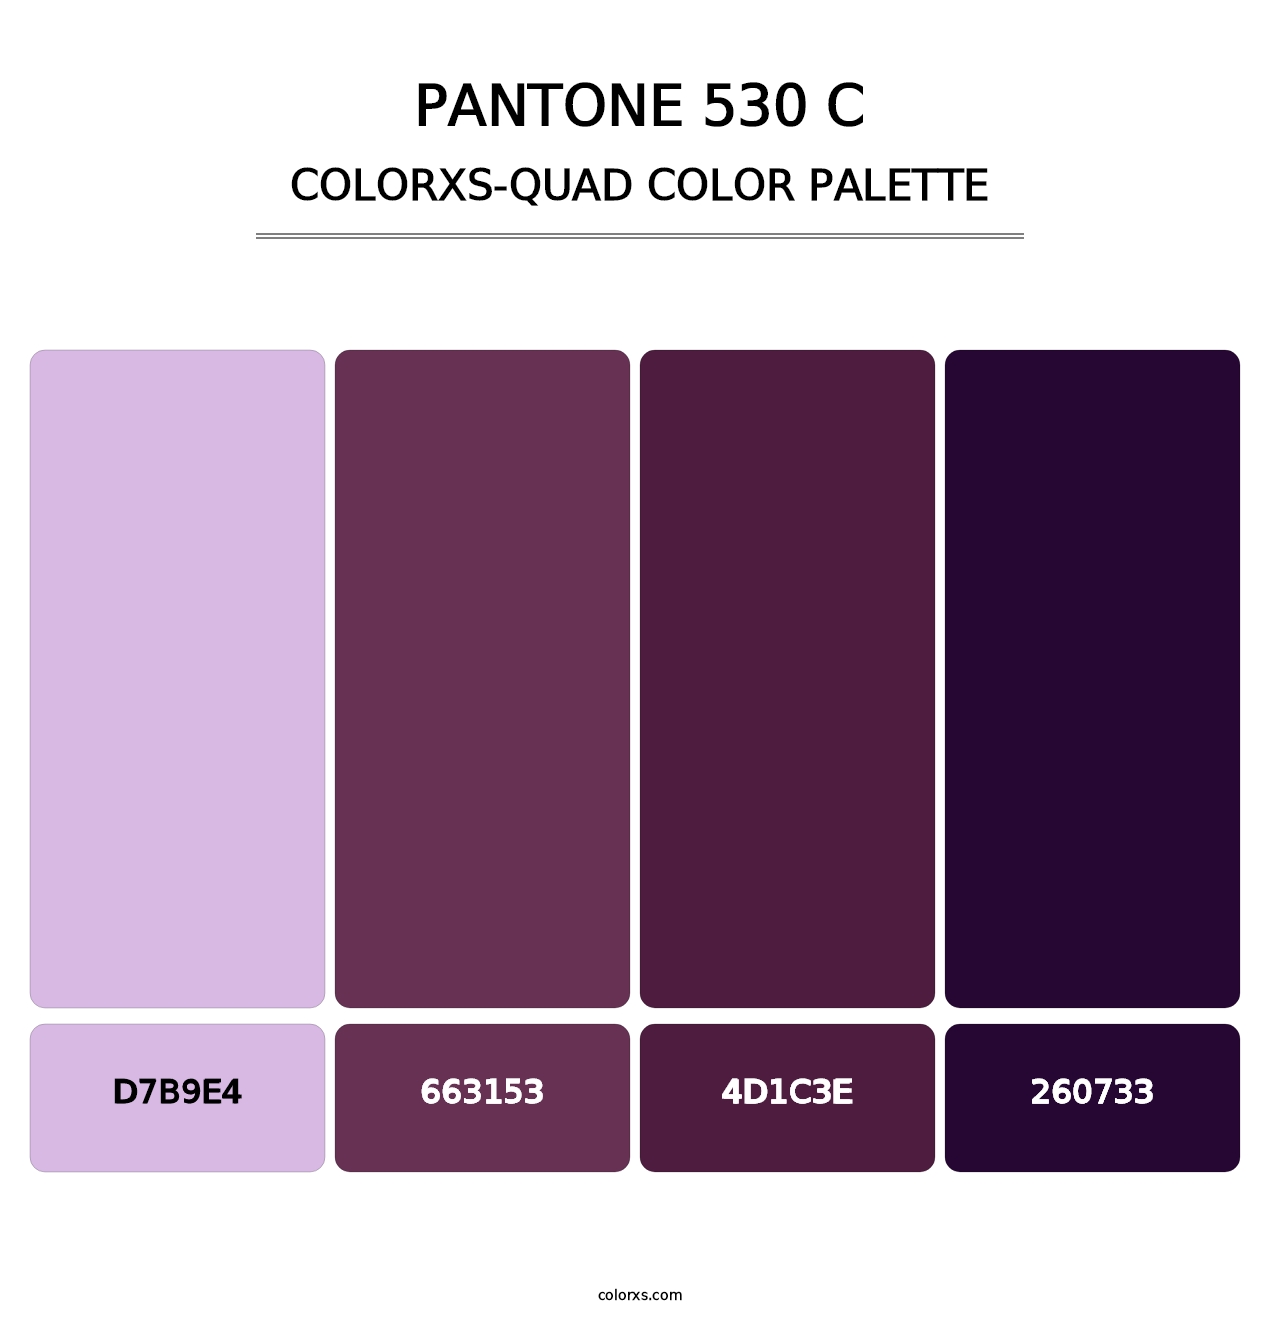 PANTONE 530 C - Colorxs Quad Palette